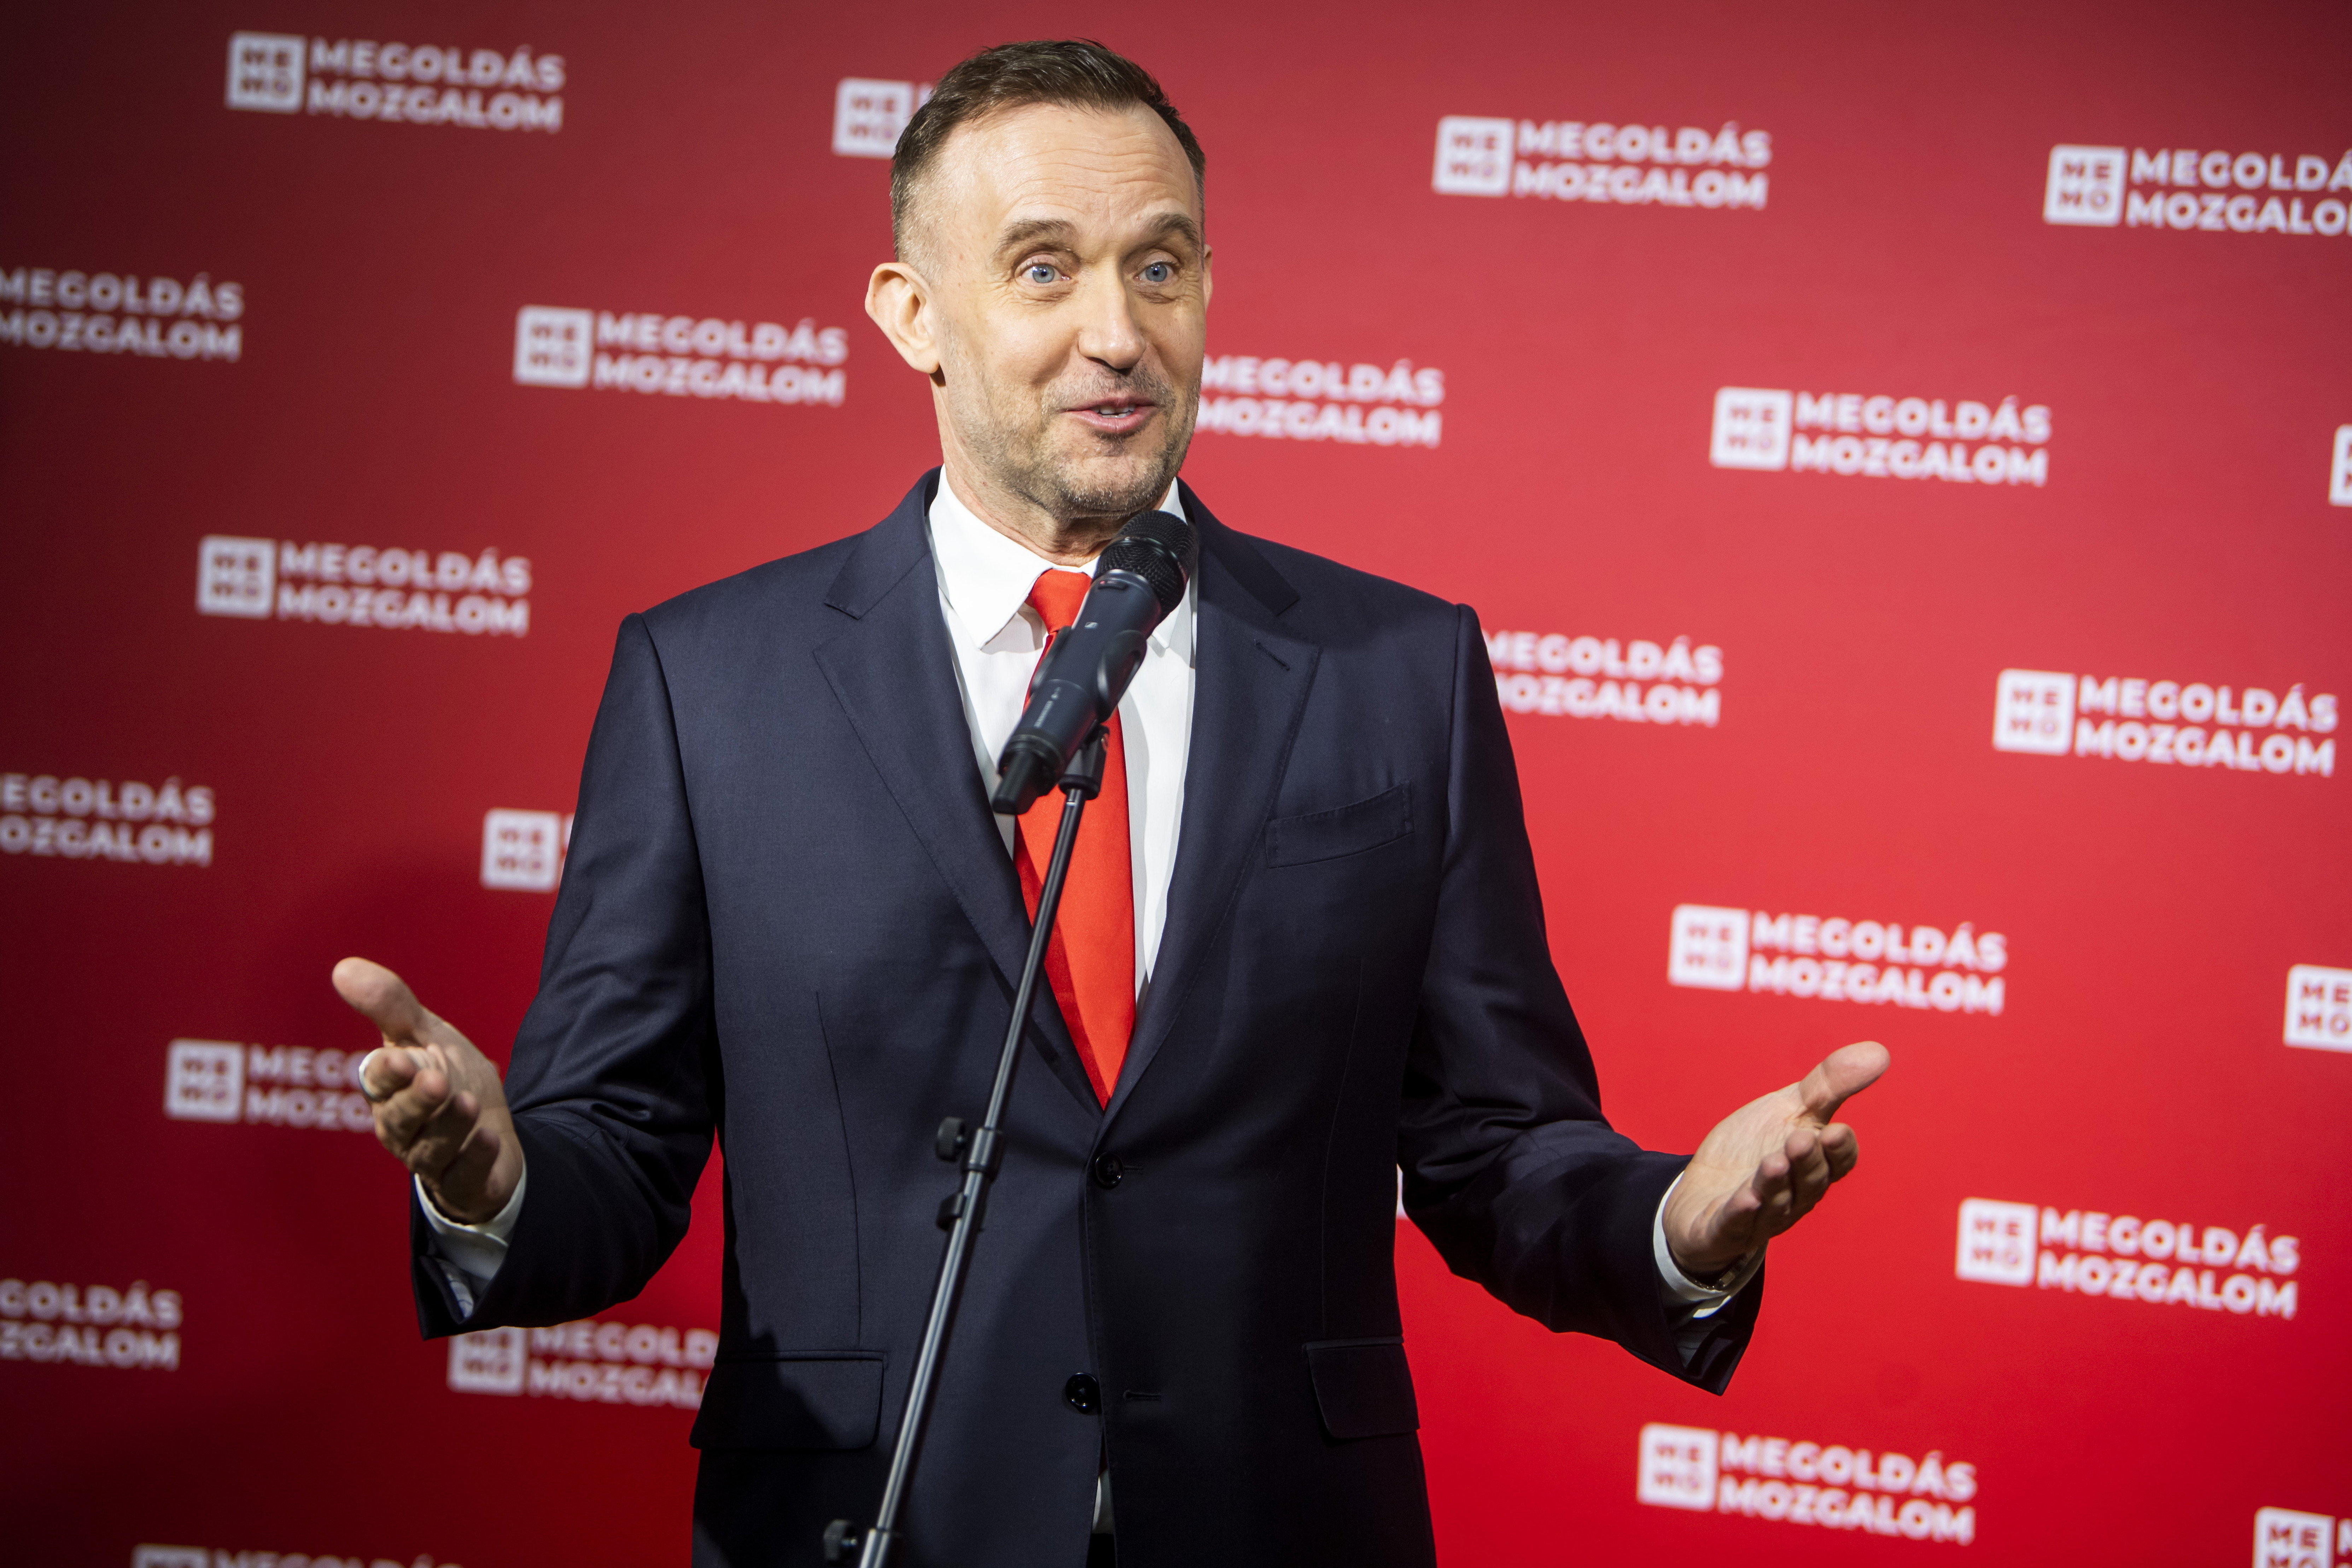 A Fidesznél nem merült fel a választási csalás gyanúja, a Gattyán- és a Gődény-pártoknál igen